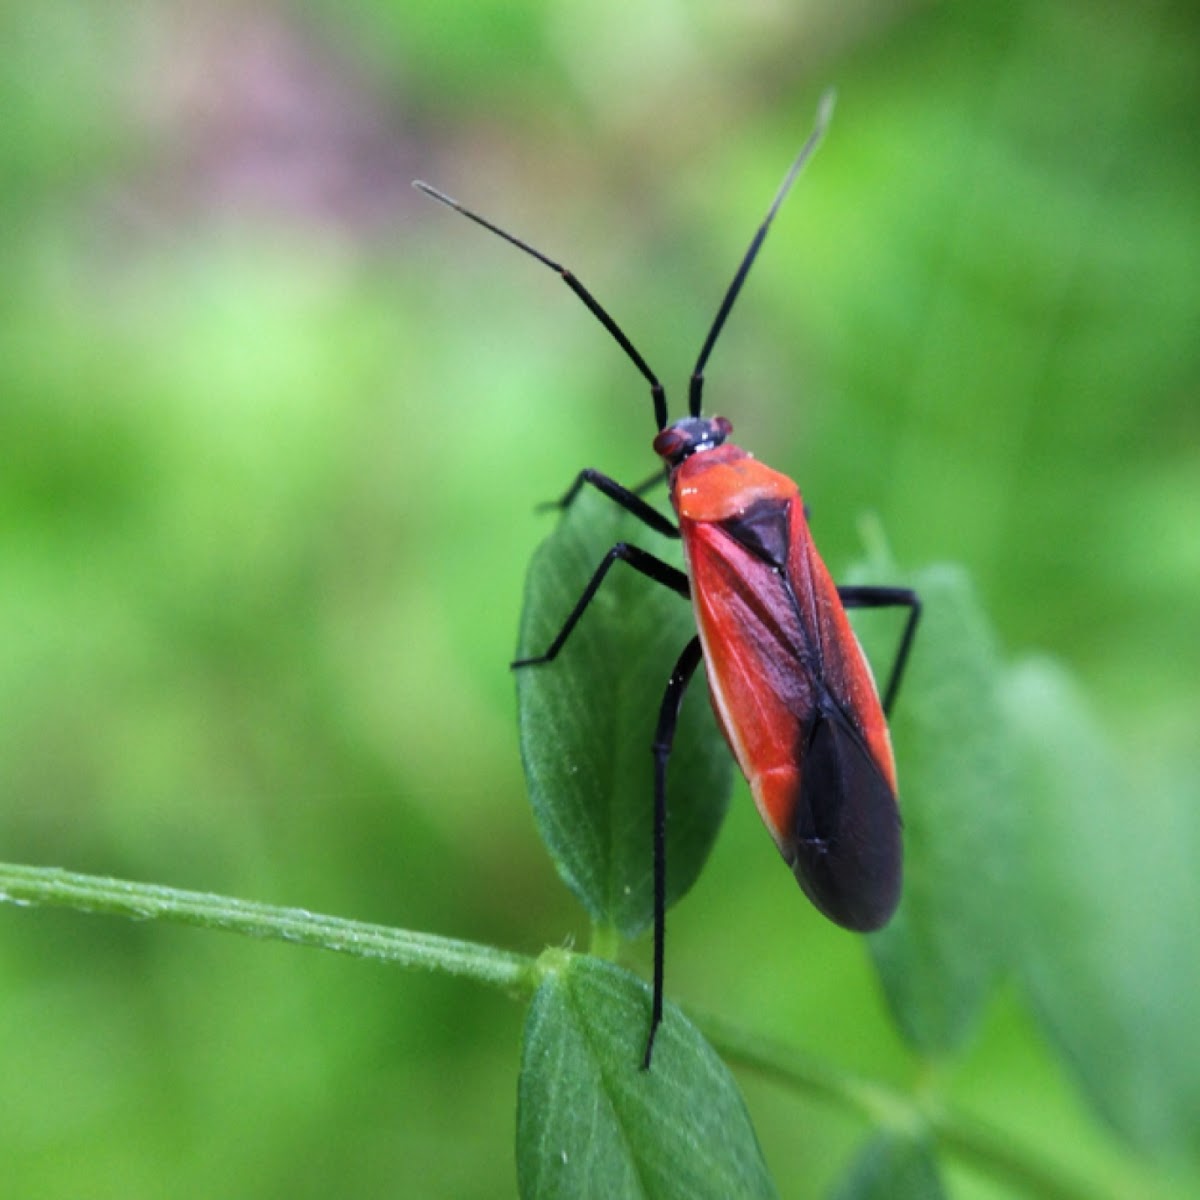 Red Stinkbug, adult